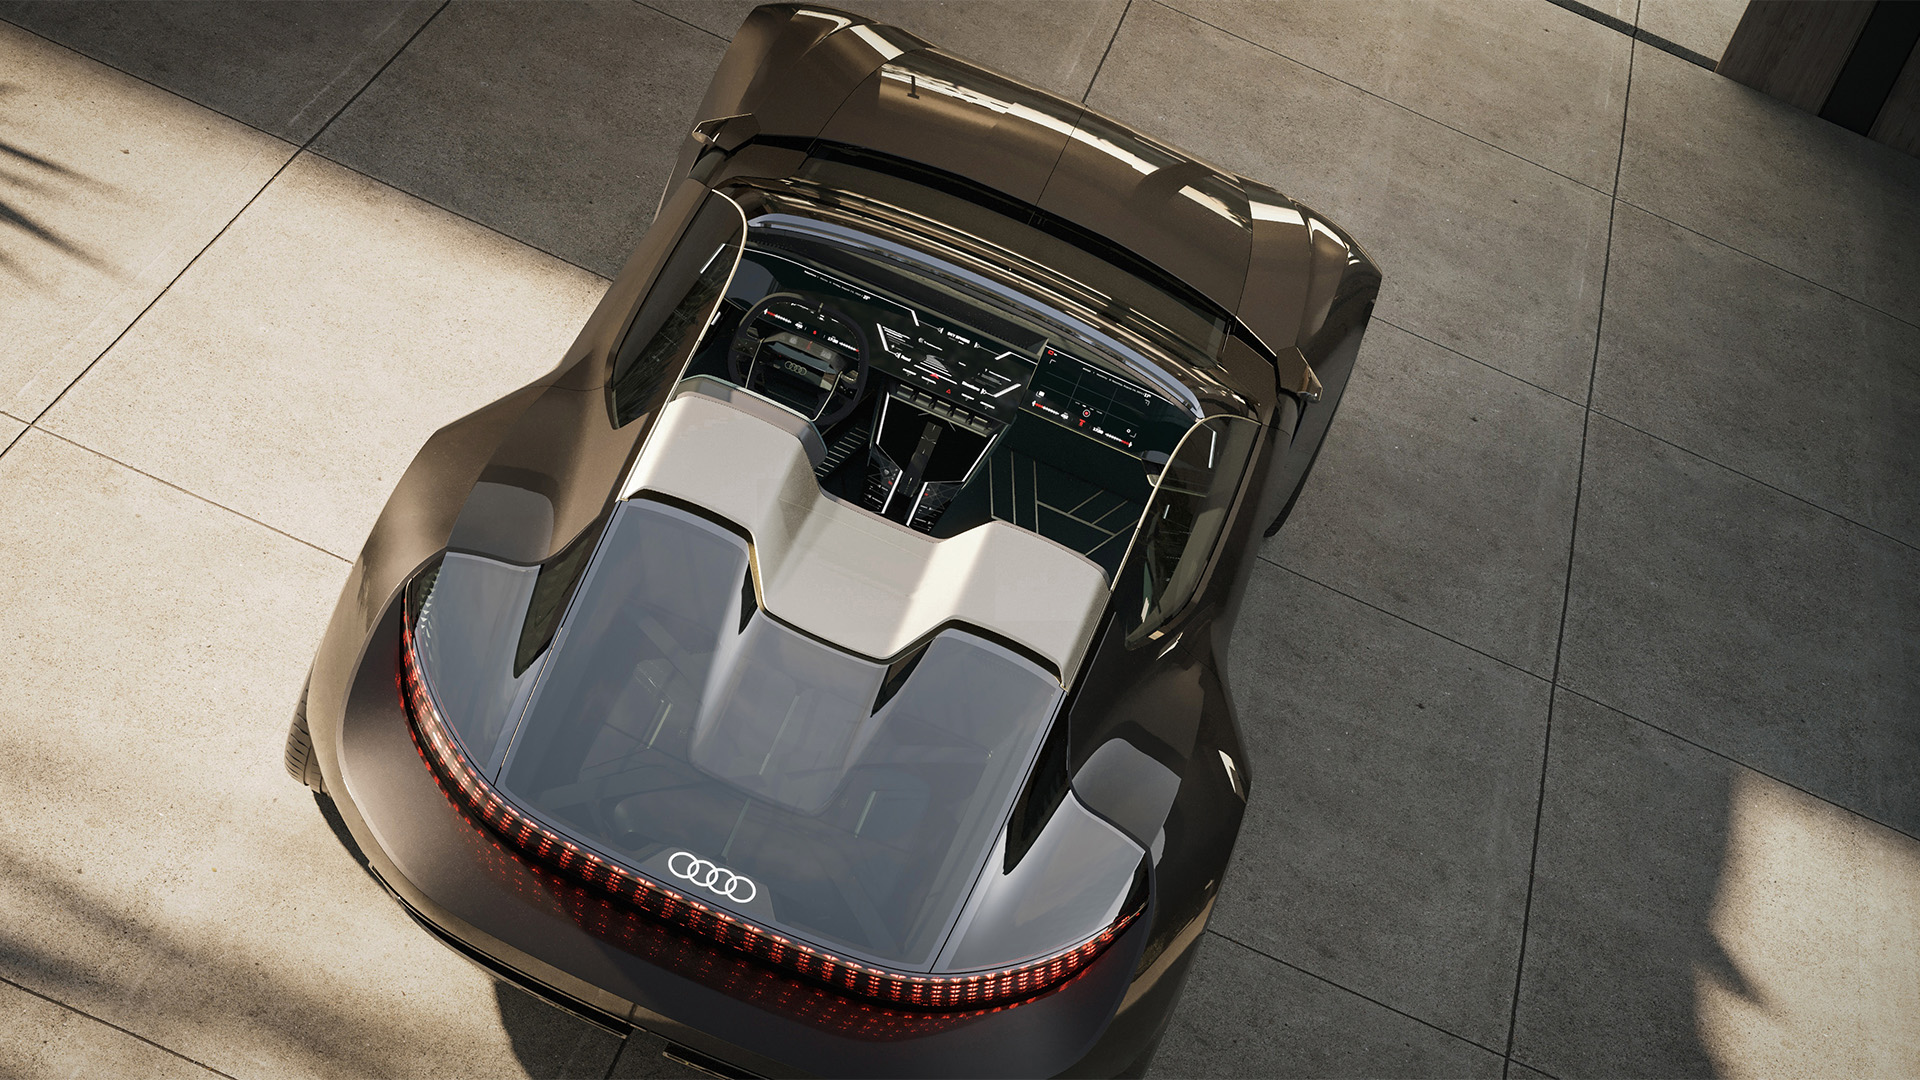  Roadster Audi Skysphere widziany ukośnie z góry